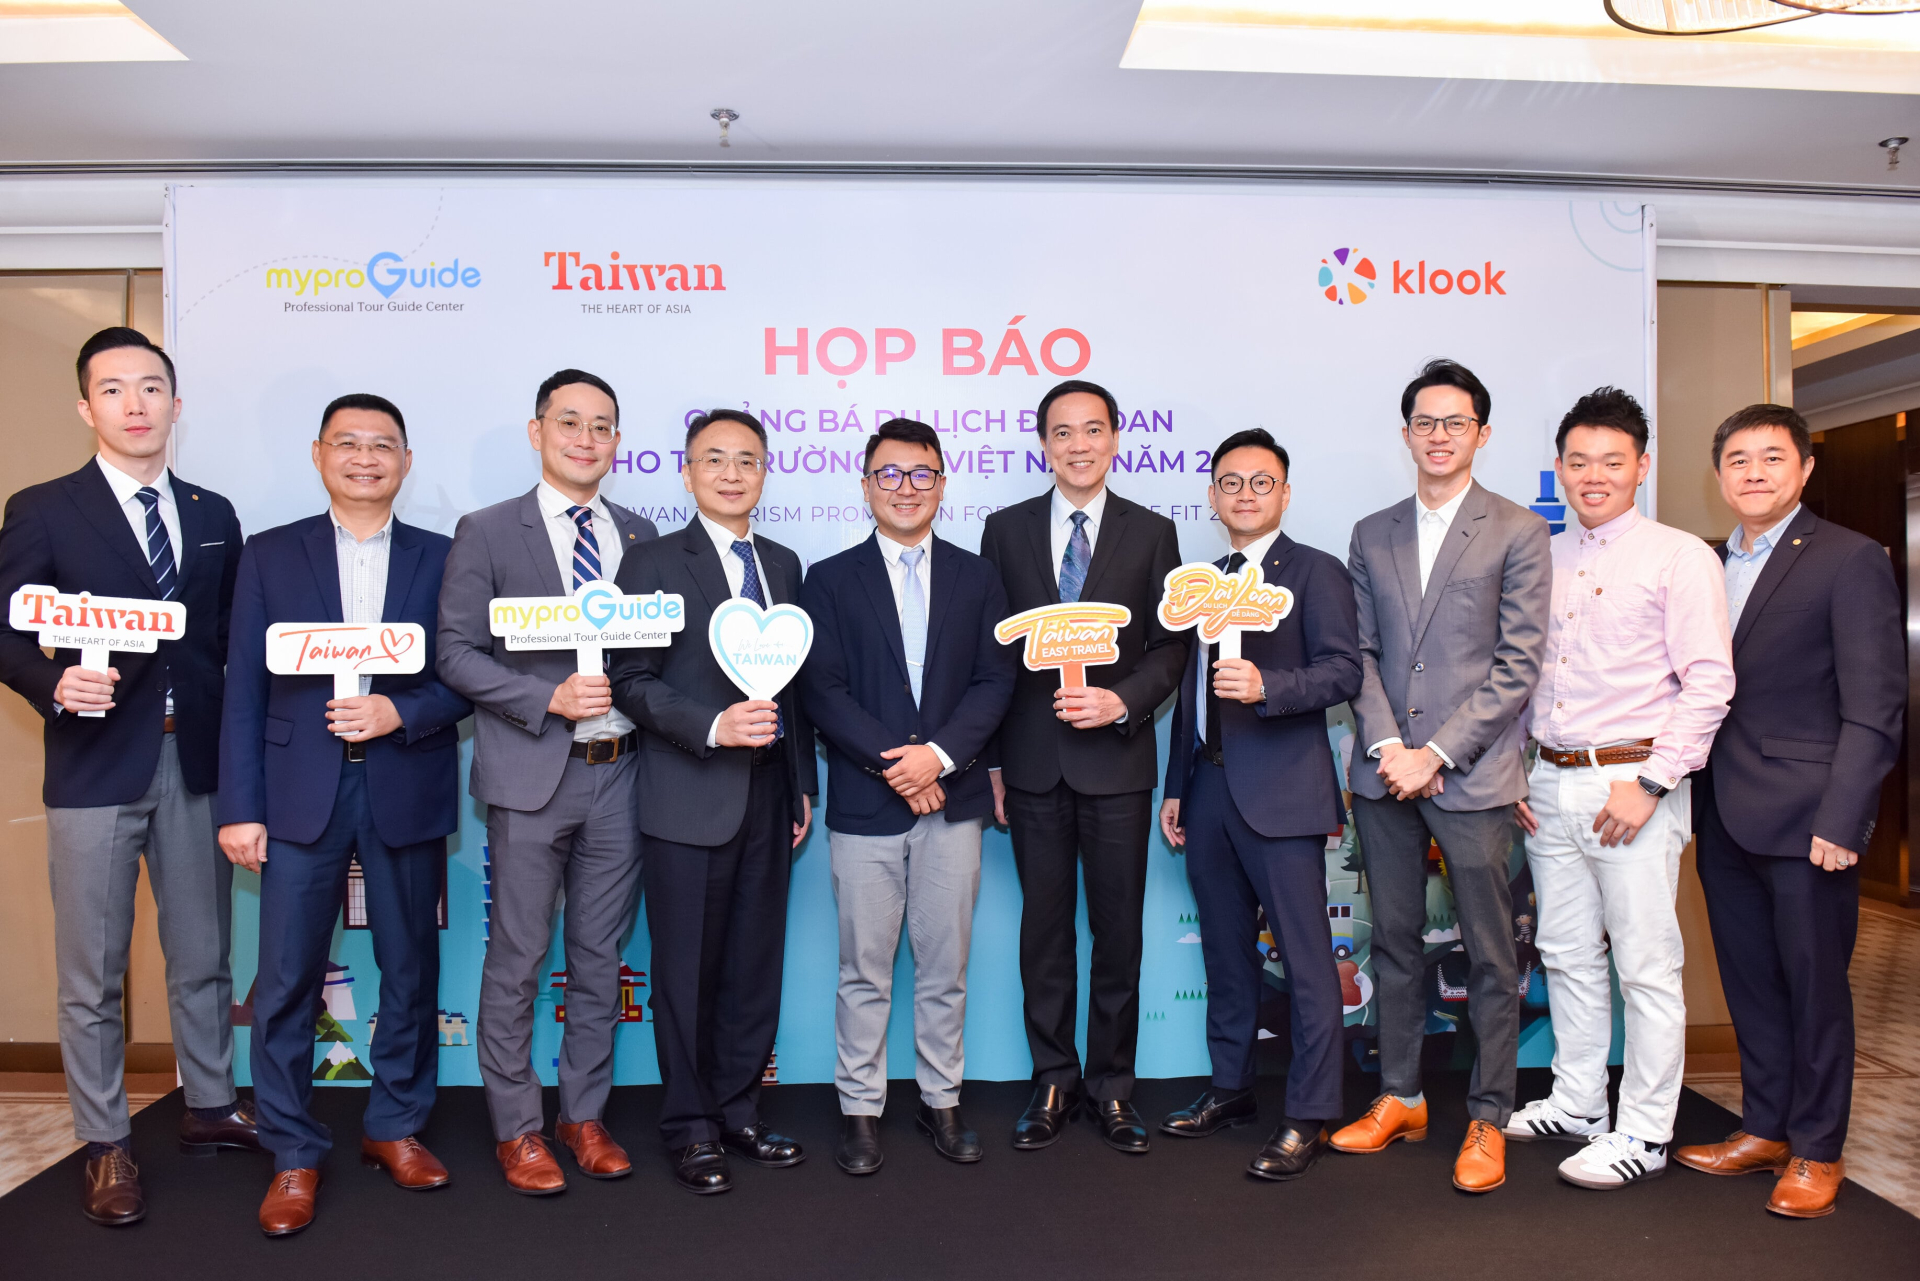 Đôi bạn thân Thùy Anh - Thái Dũng nắm tay đi 'tất tần tật' trong chiến dịch quảng bá du lịch Đài Loan - ảnh 5